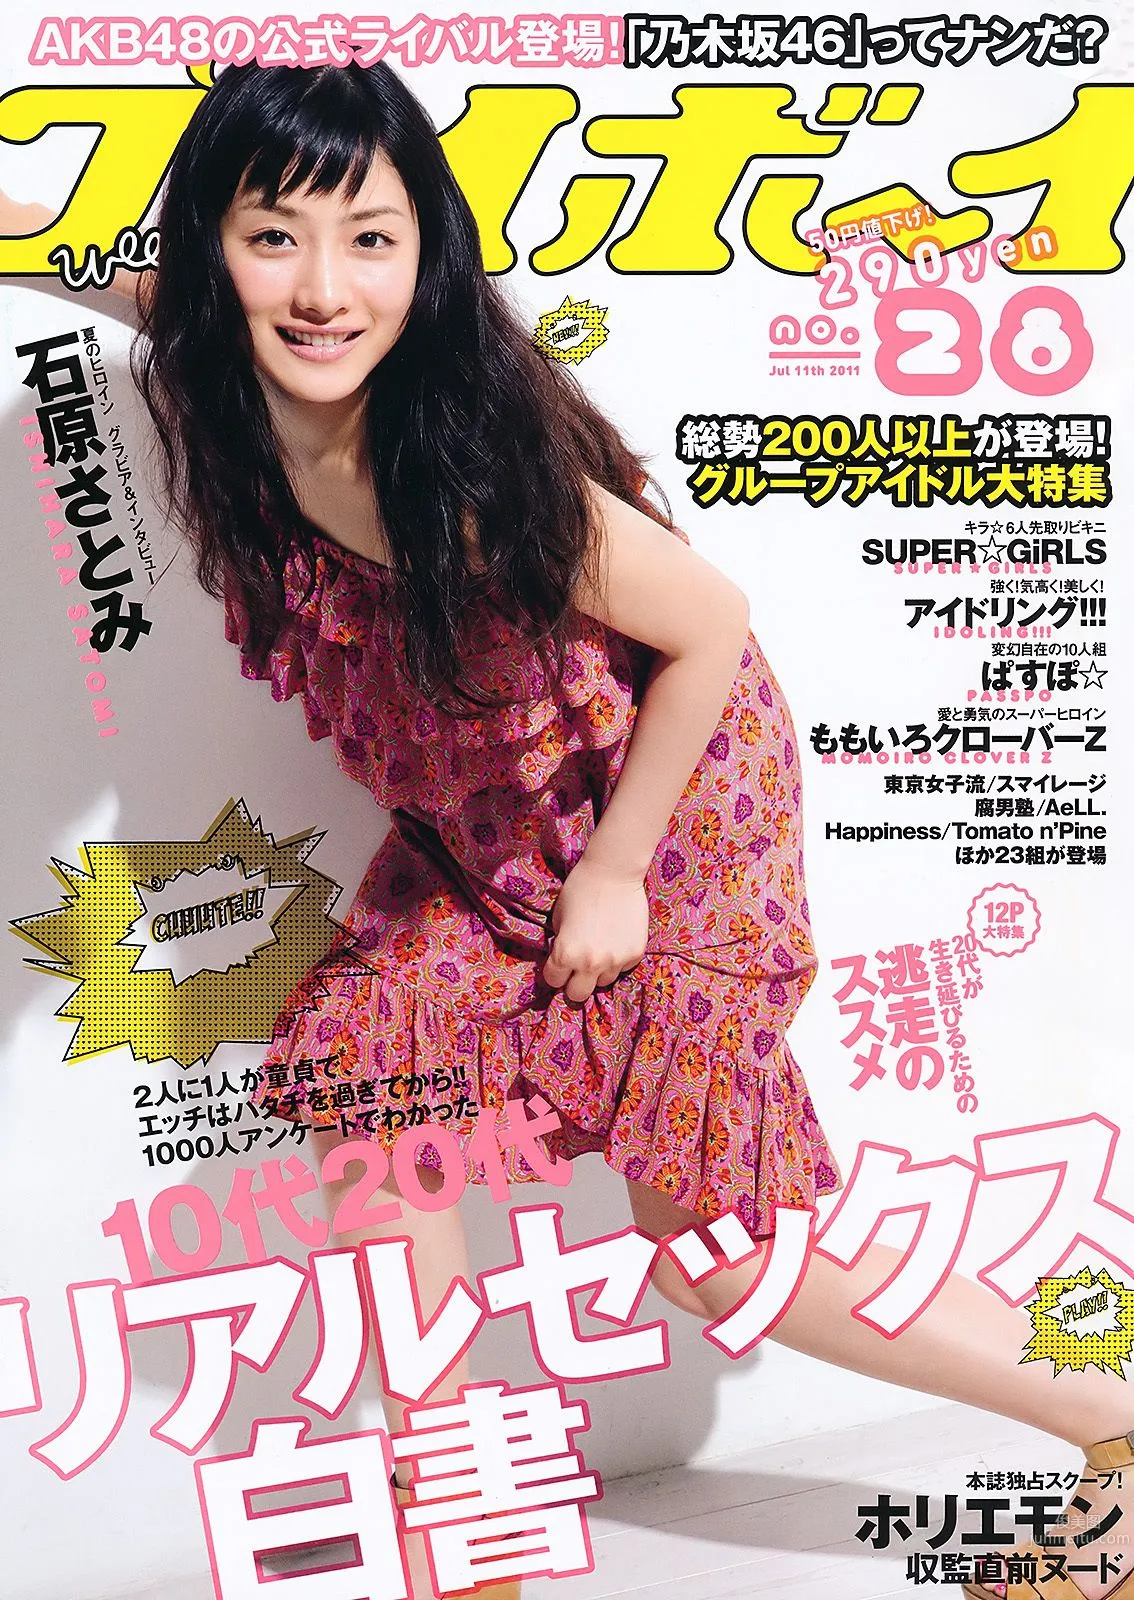 石原さとみ アイドリング!!! SUPER☆GiRLS ももいろクローバーＺ 中村一 [Weekly Playboy] 2011年No.28 写真杂志1